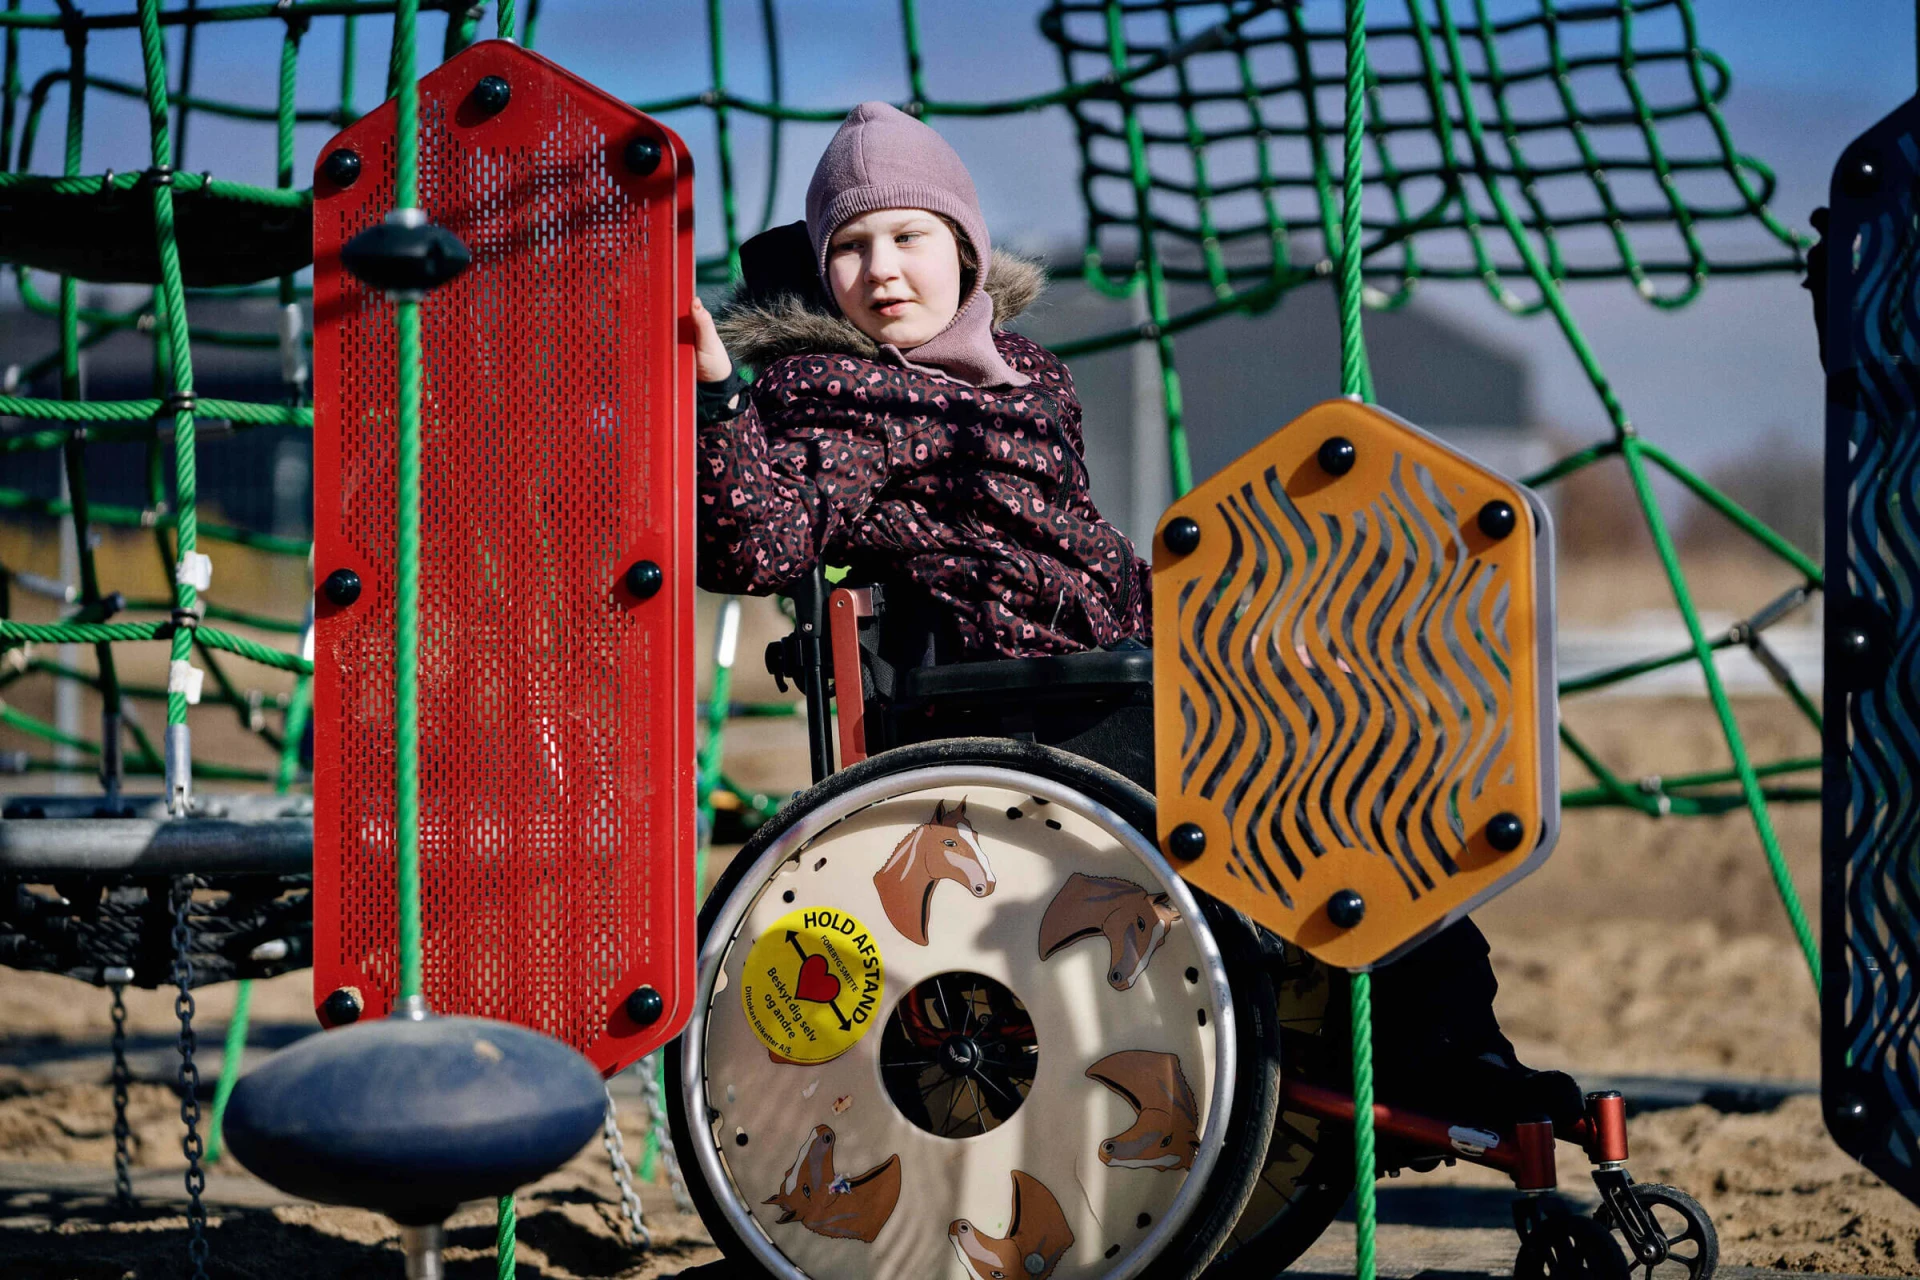 Pige i kørestol leger med sensoriske legepaneler